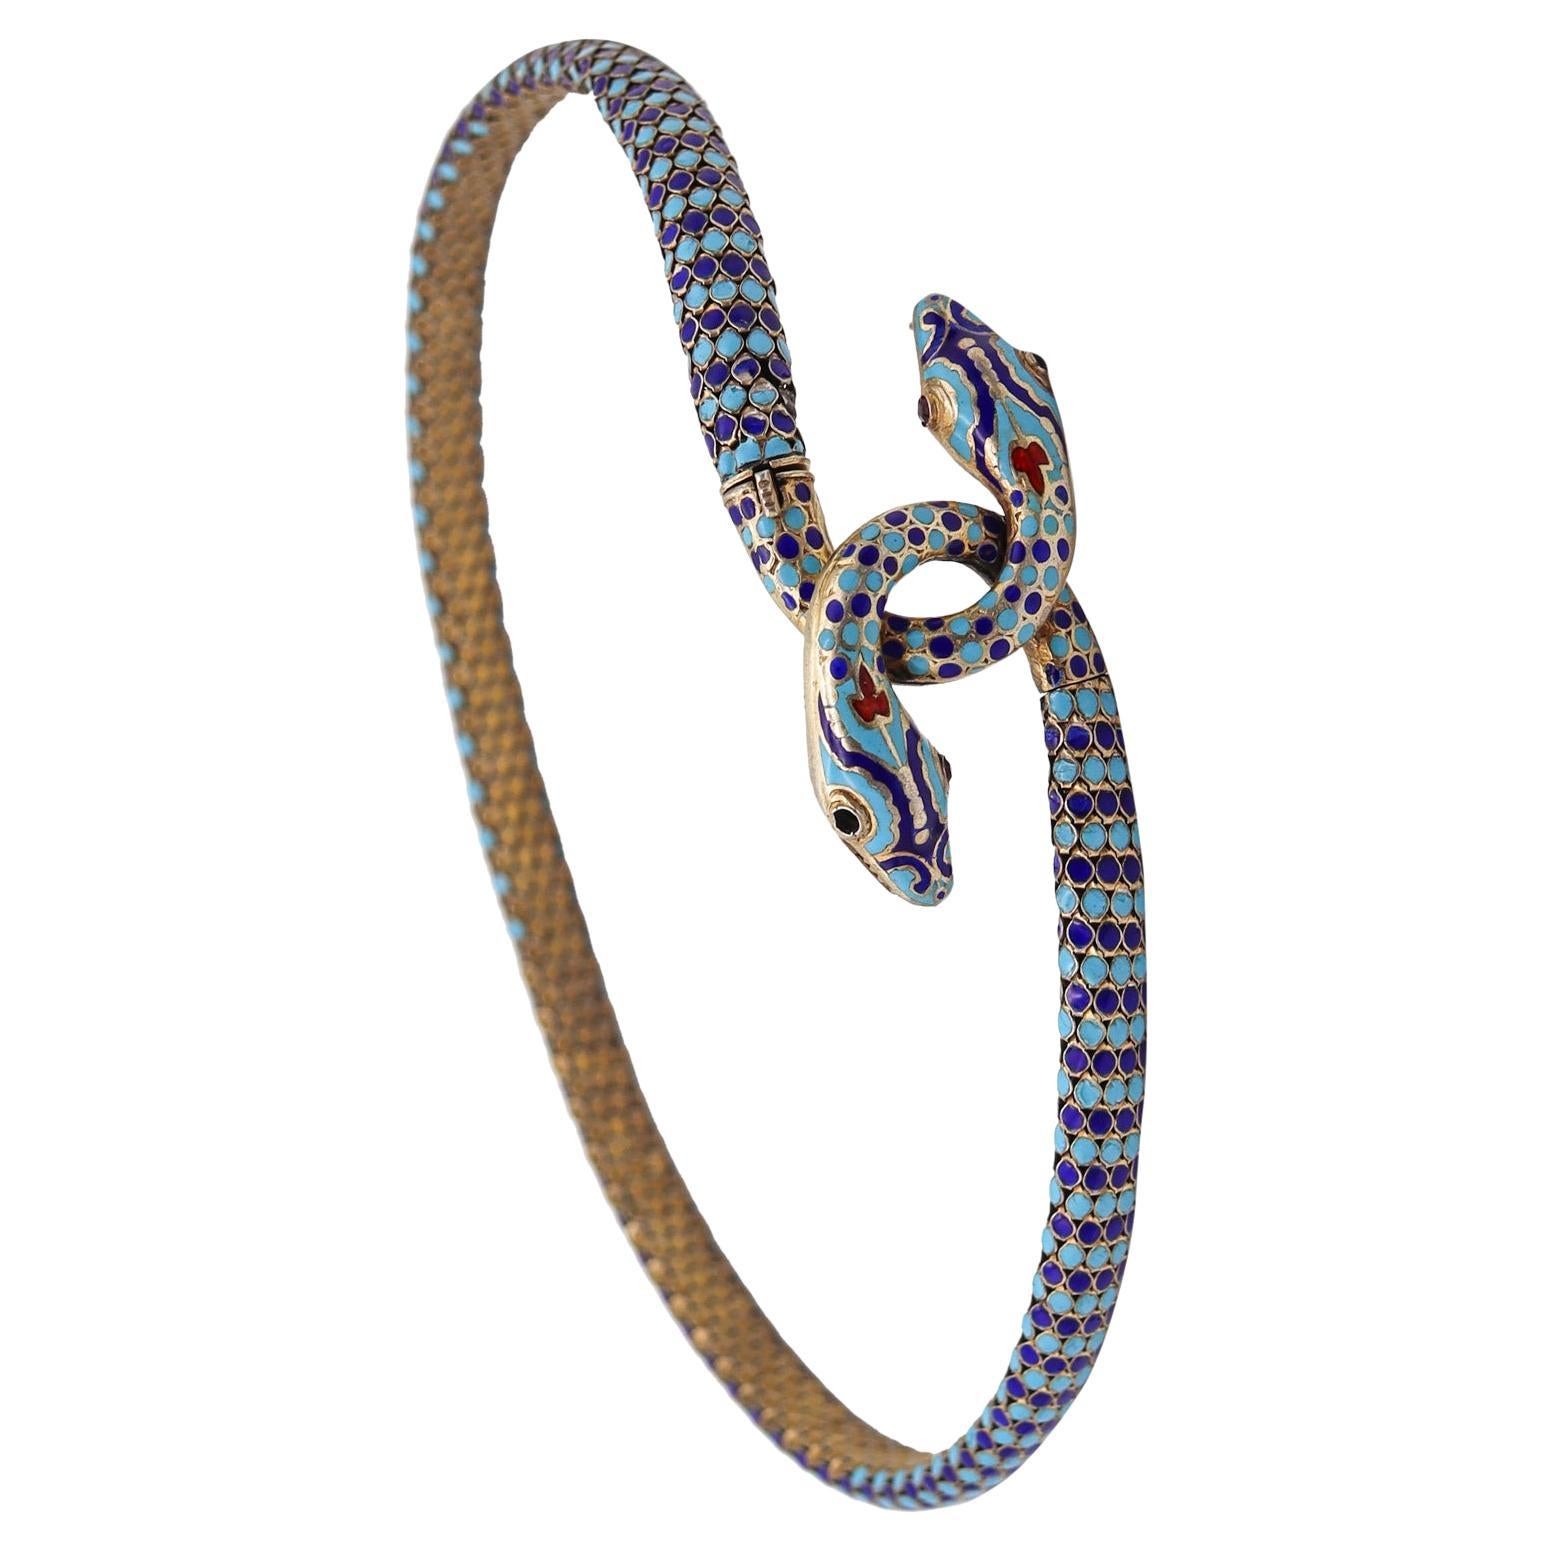 Französisch Ägyptische Wiedergeburt champleve Halskette.

Fabelhafte Halskette, die in Frankreich im späten 19. Jahrhundert, um 1880, hergestellt wurde. Dieses schöne Stück wurde im Stil der ägyptischen Wiedergeburt mit geflochtenen Teilen aus